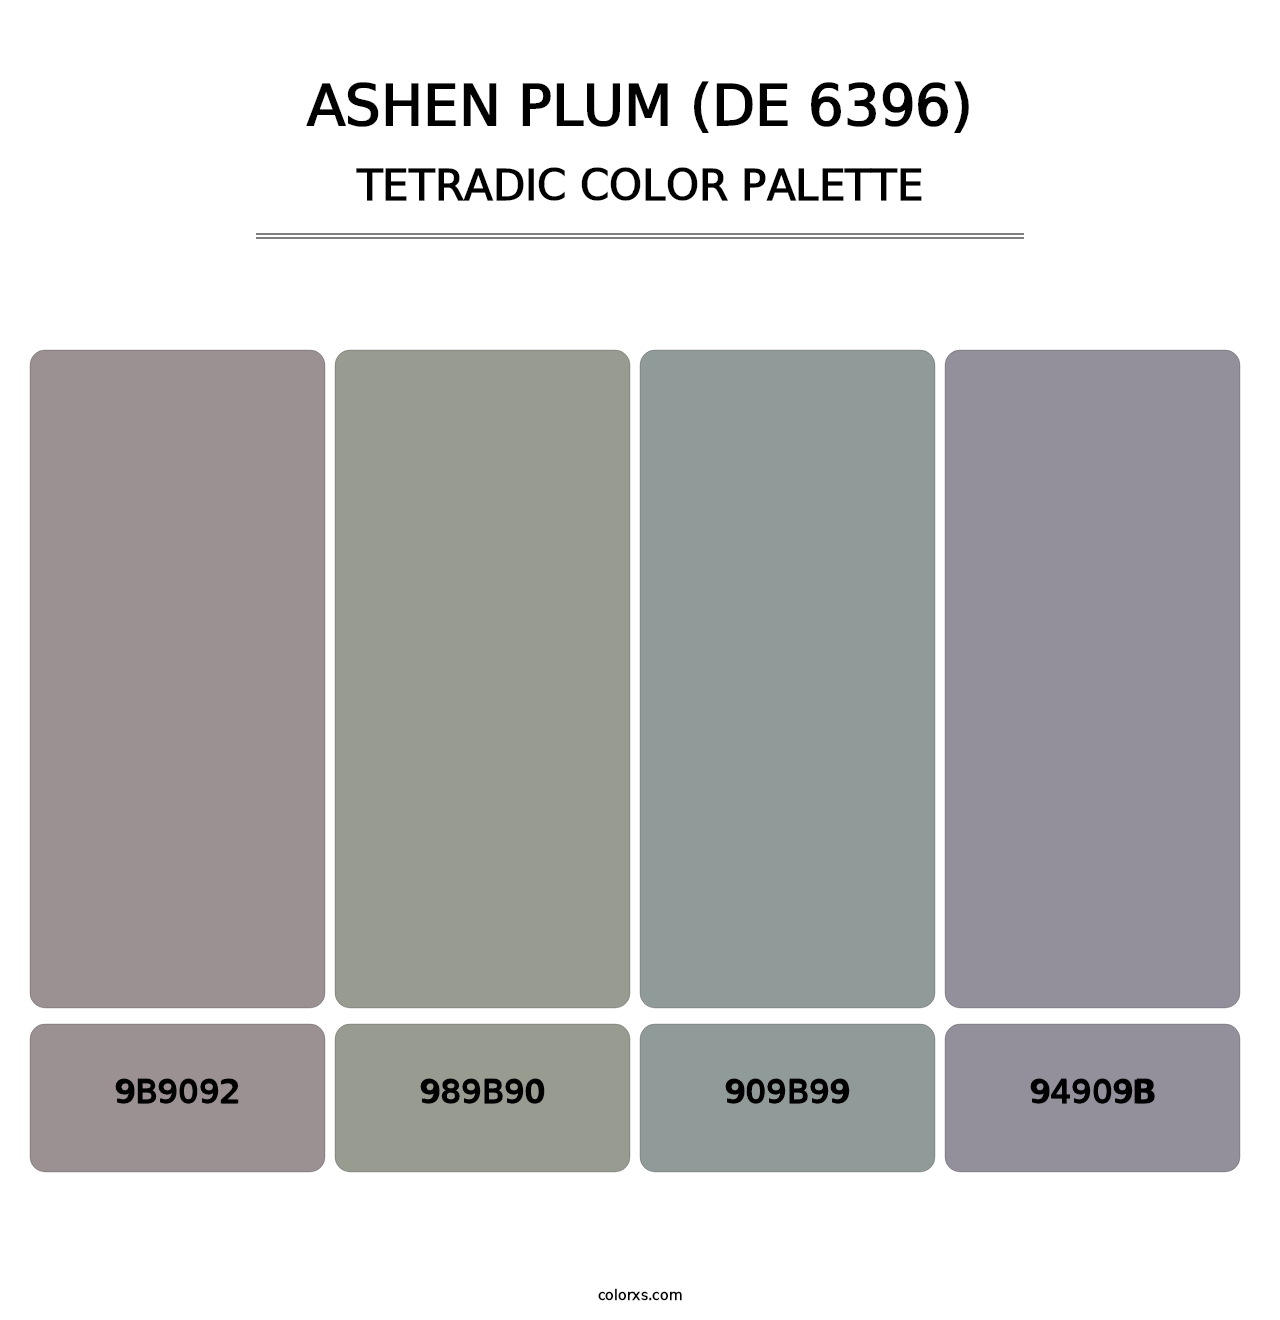 Ashen Plum (DE 6396) - Tetradic Color Palette